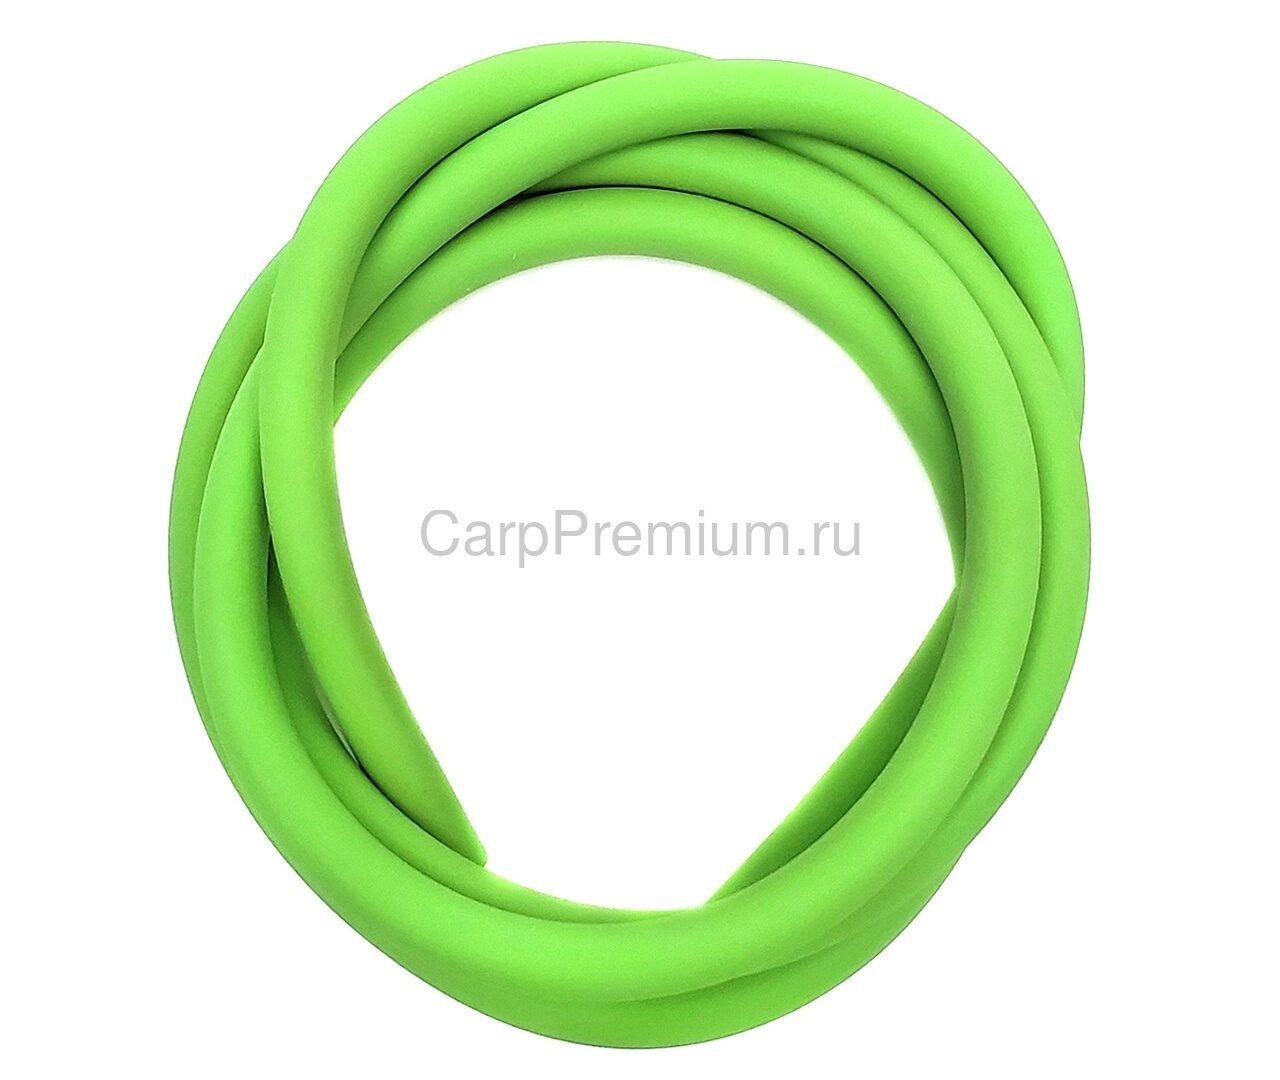 Трубка силиконовая флуоресцентная 4 мм Зеленая MadCat (МэдКэт) - Rig Tube Fluo Green, 1 м